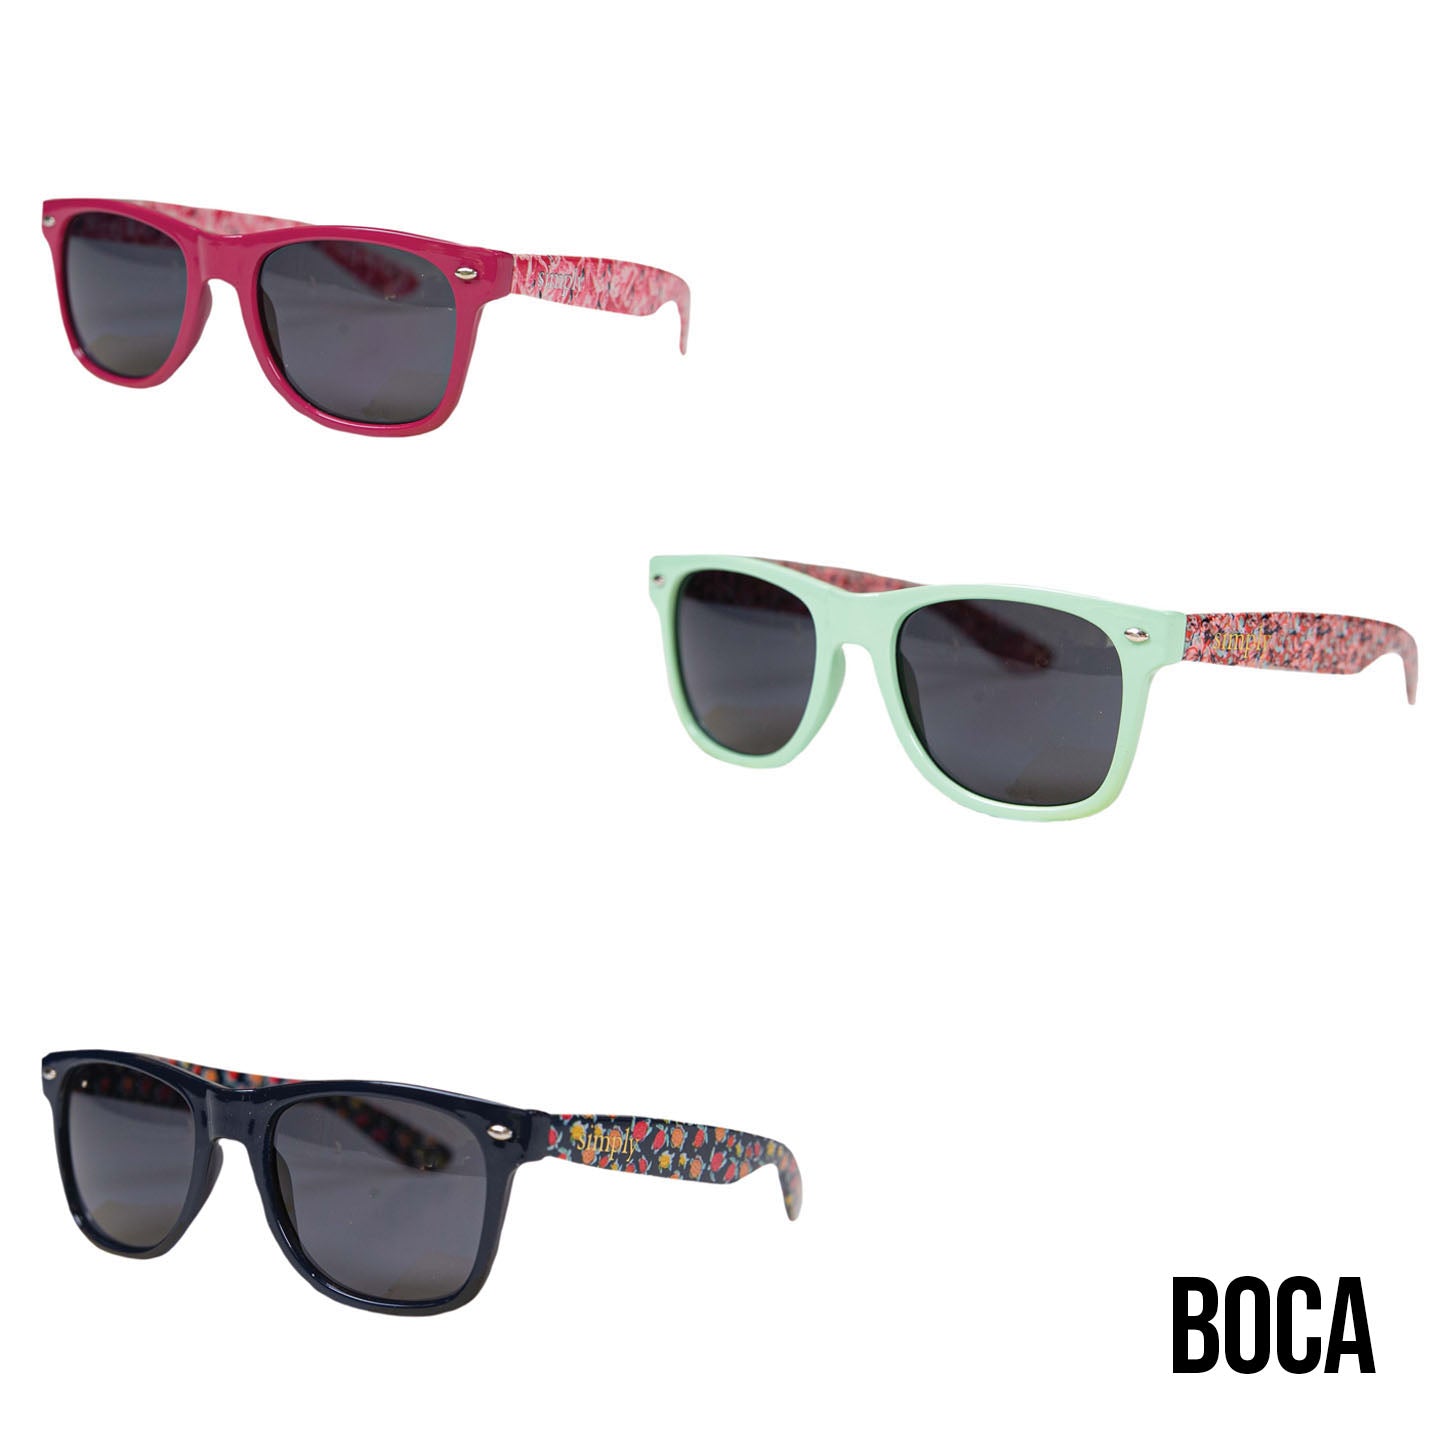 SS Boca Sunglasses